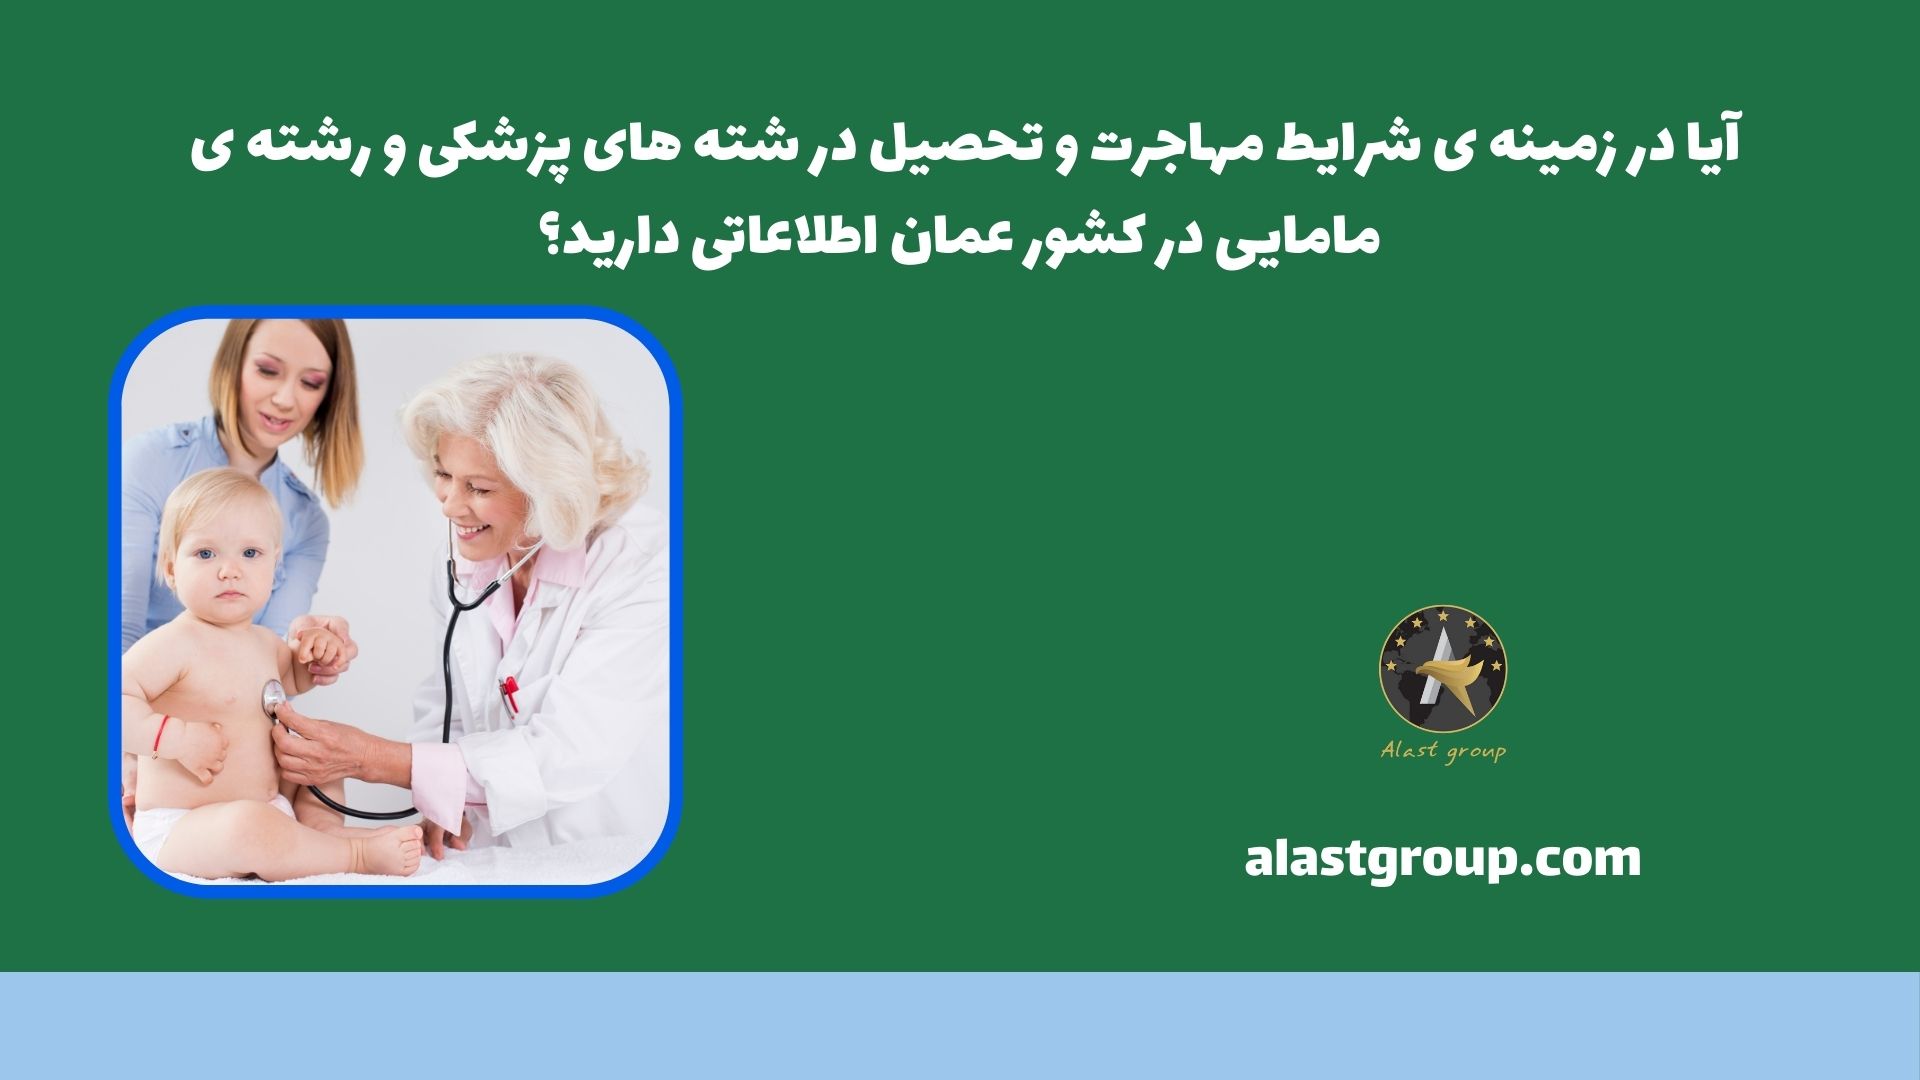 آیا در زمینه ی شرایط مهاجرت و تحصیل در شته های پزشکی و رشته ی مامایی در کشور عمان اطلاعاتی دارید؟